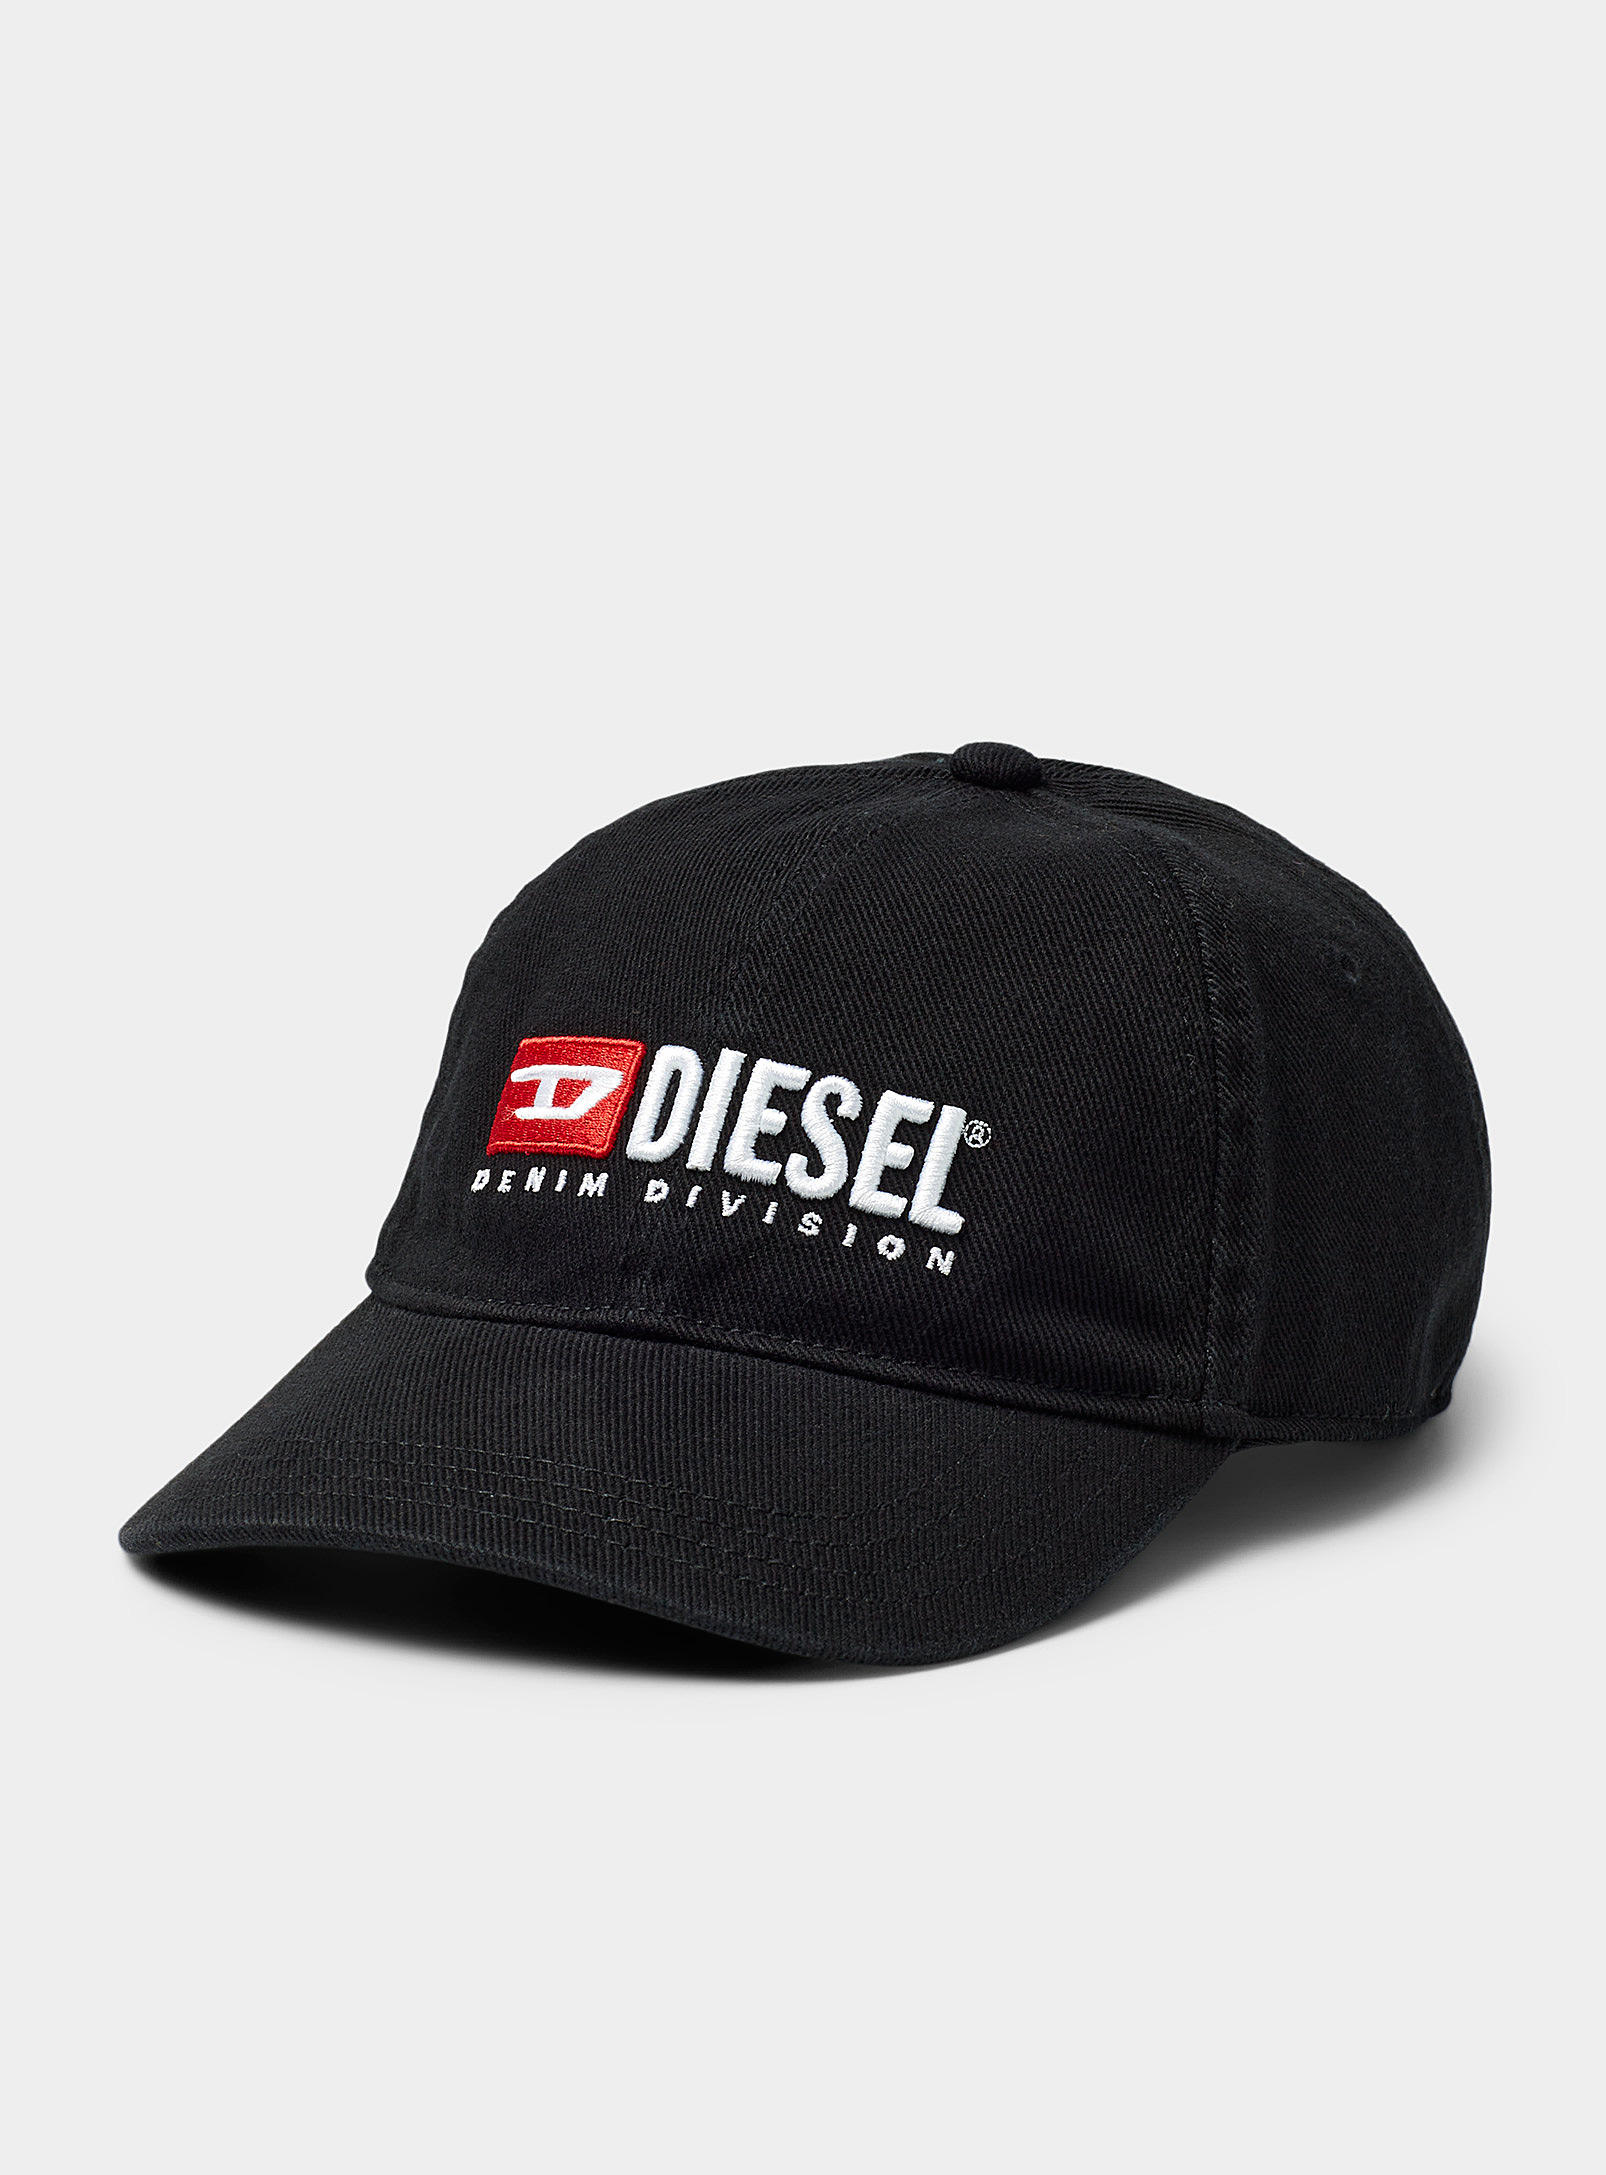 Diesel Denim Division Signature Cap In Black